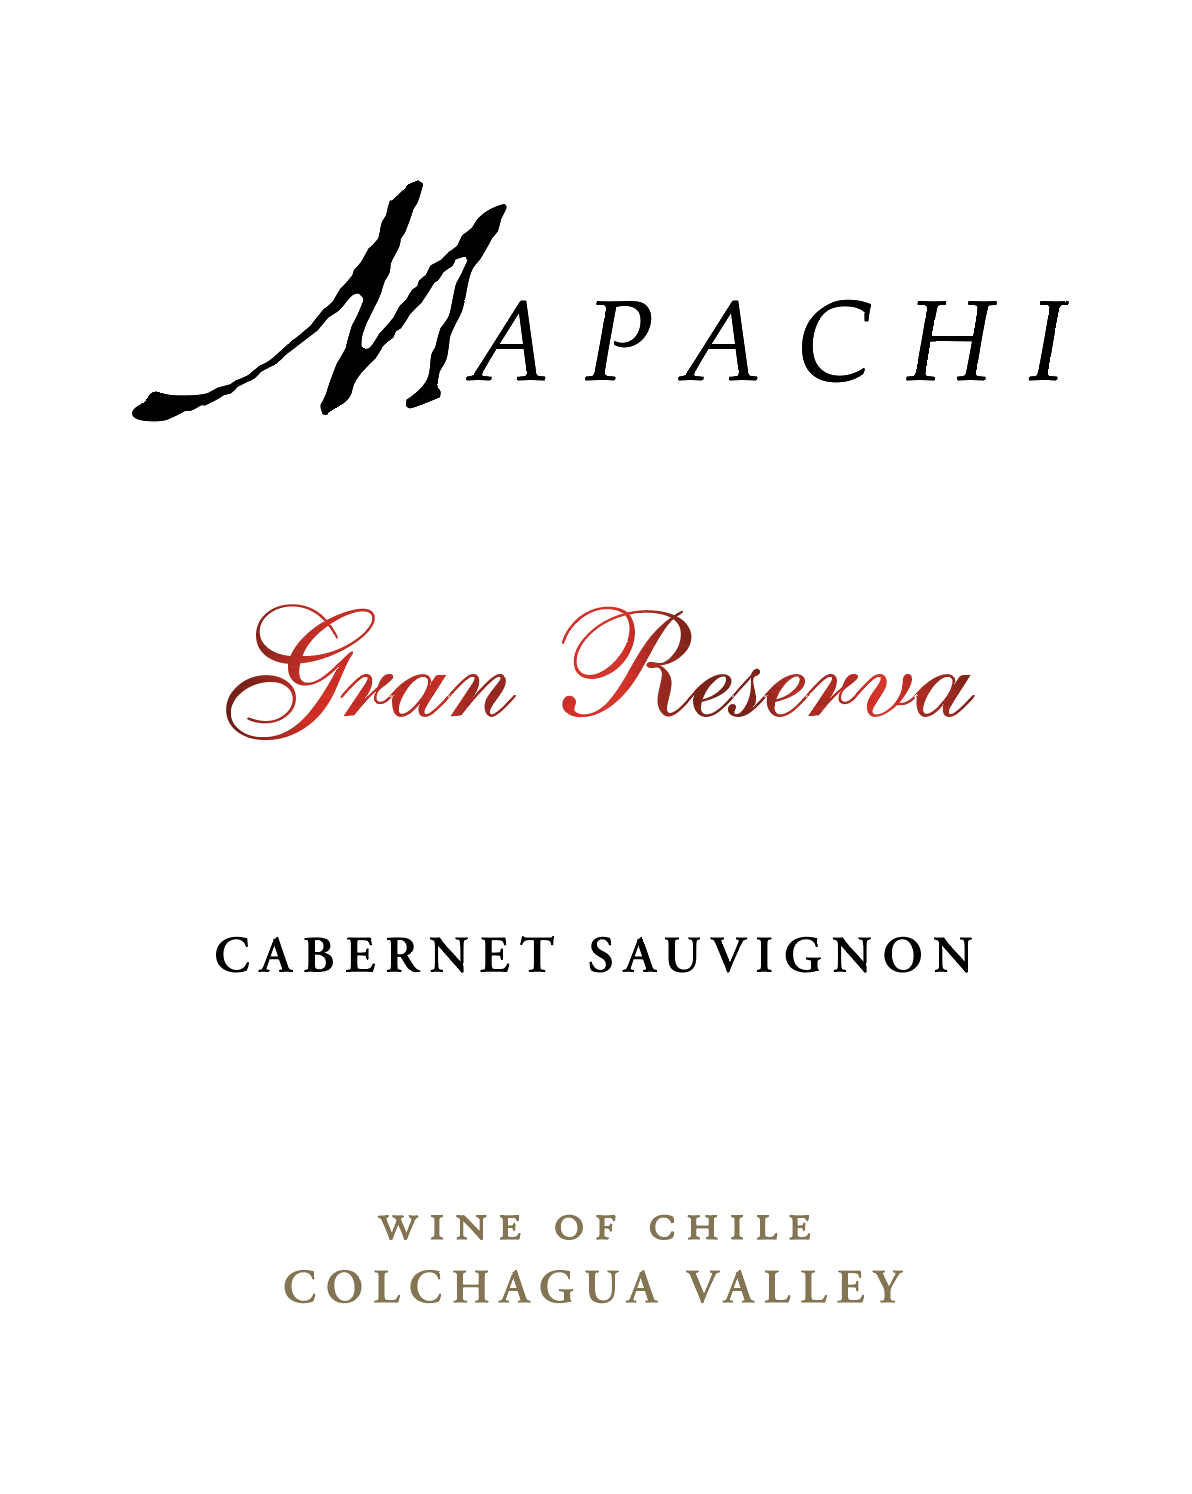 Mapachi Cabernet Sauvignon Gran Reserva  2018